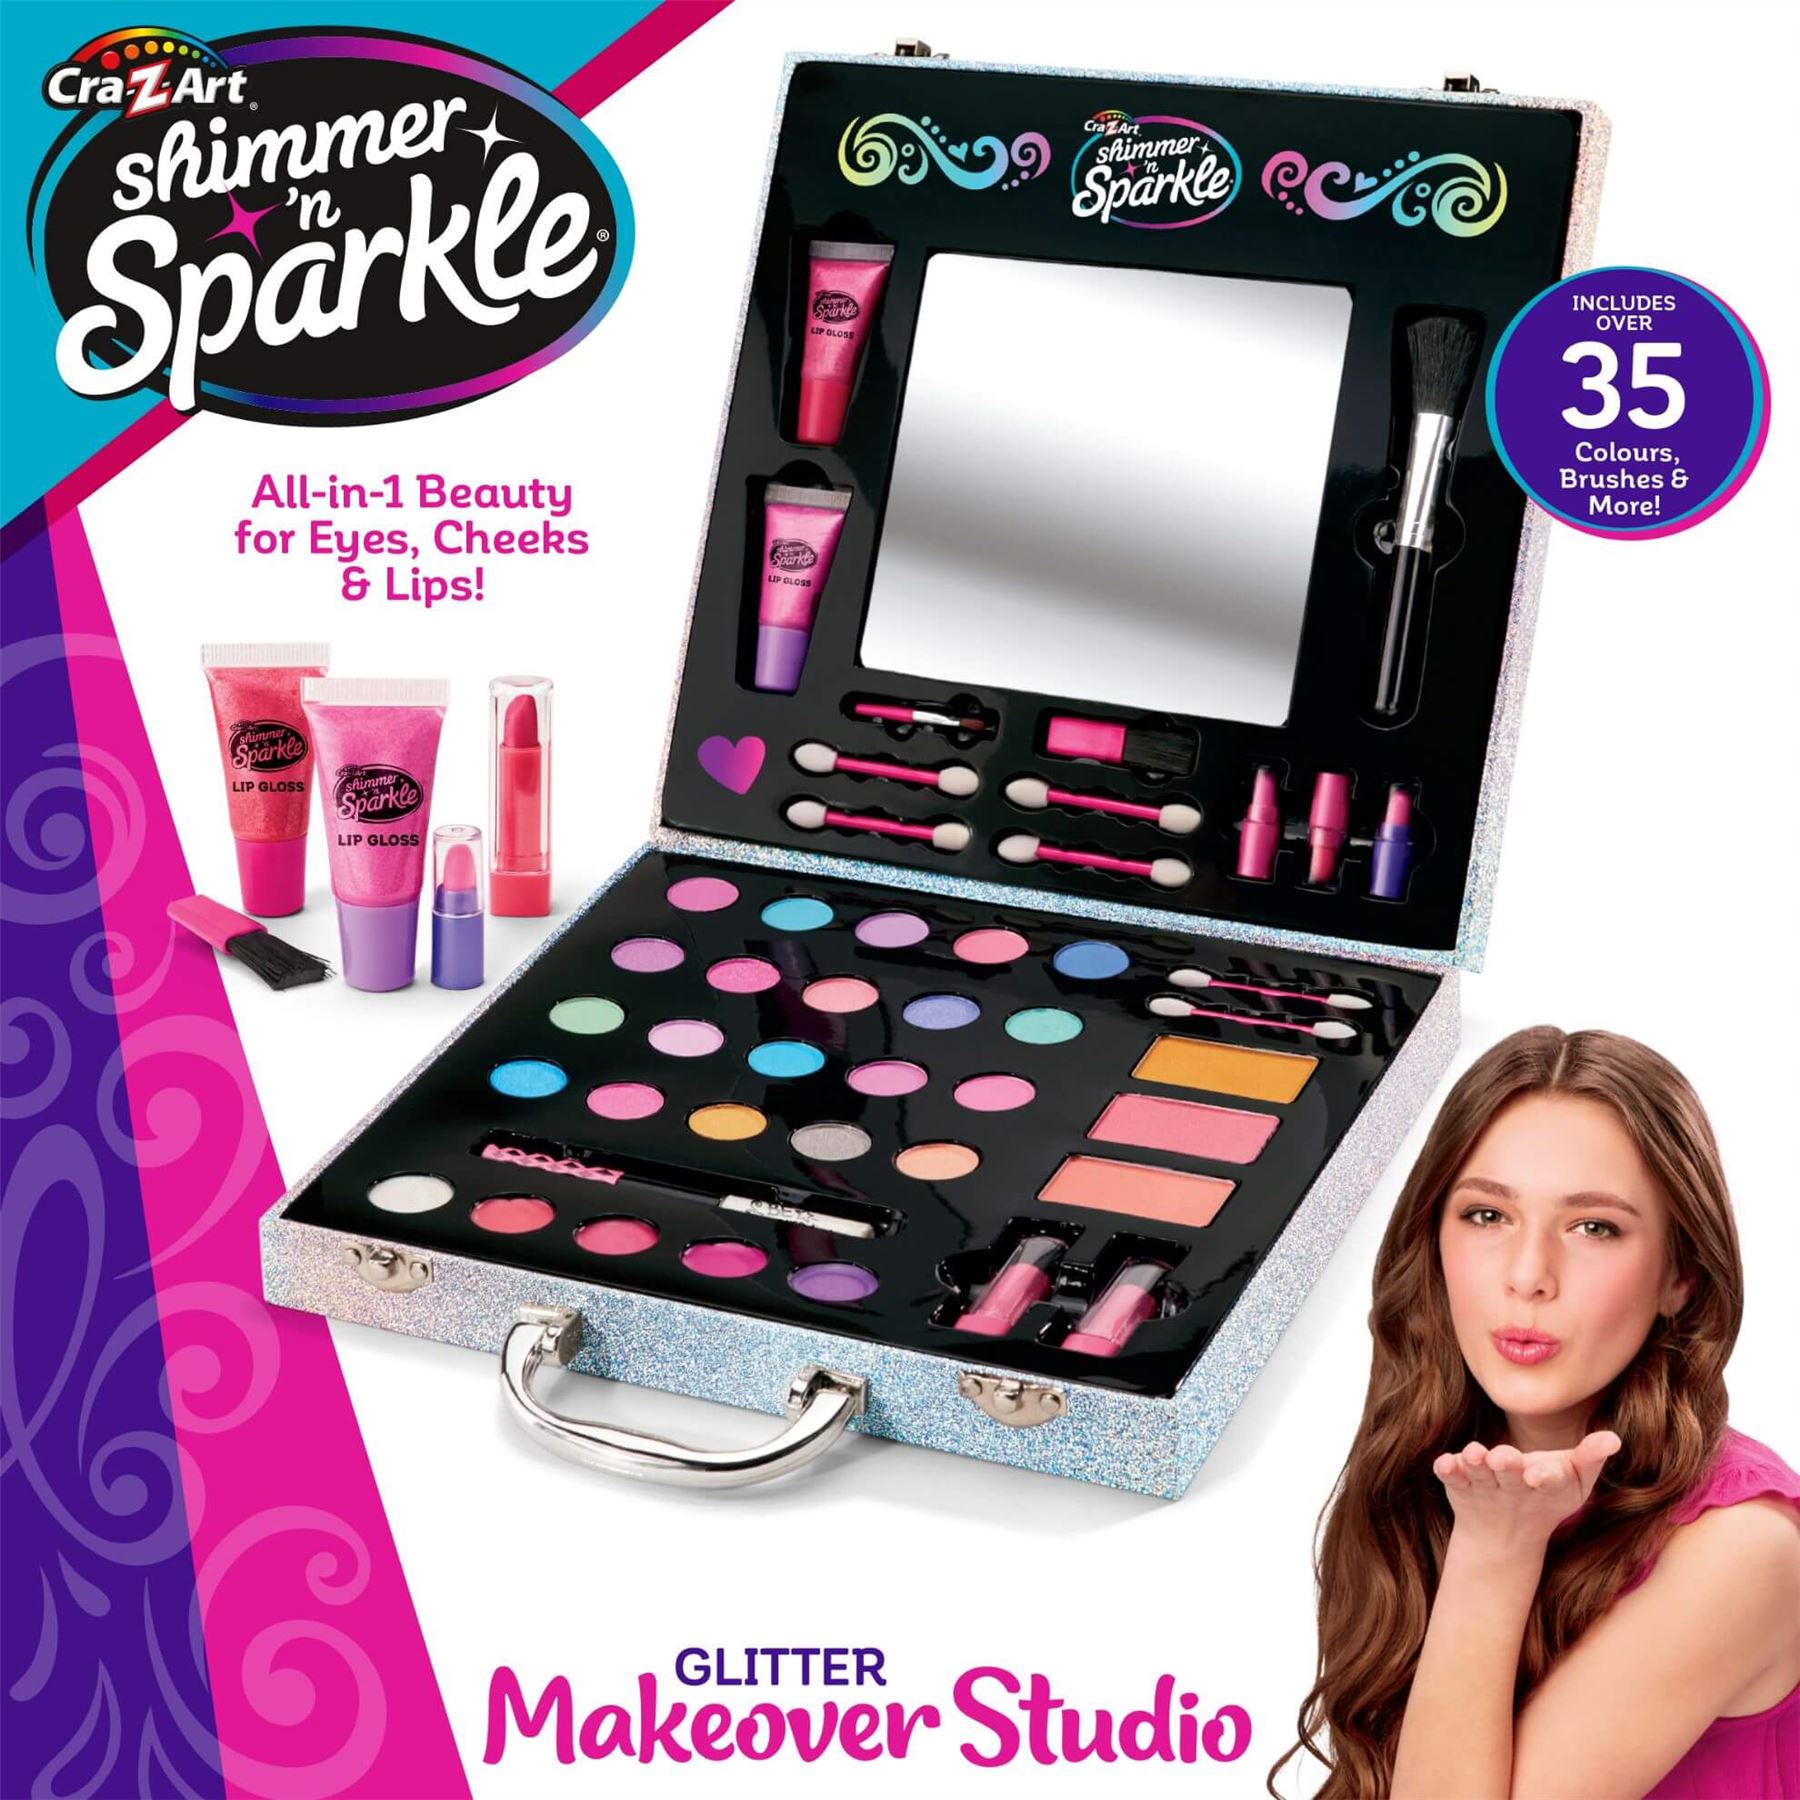 Shimmer 'N Sparkle Glitter Makeover Studio